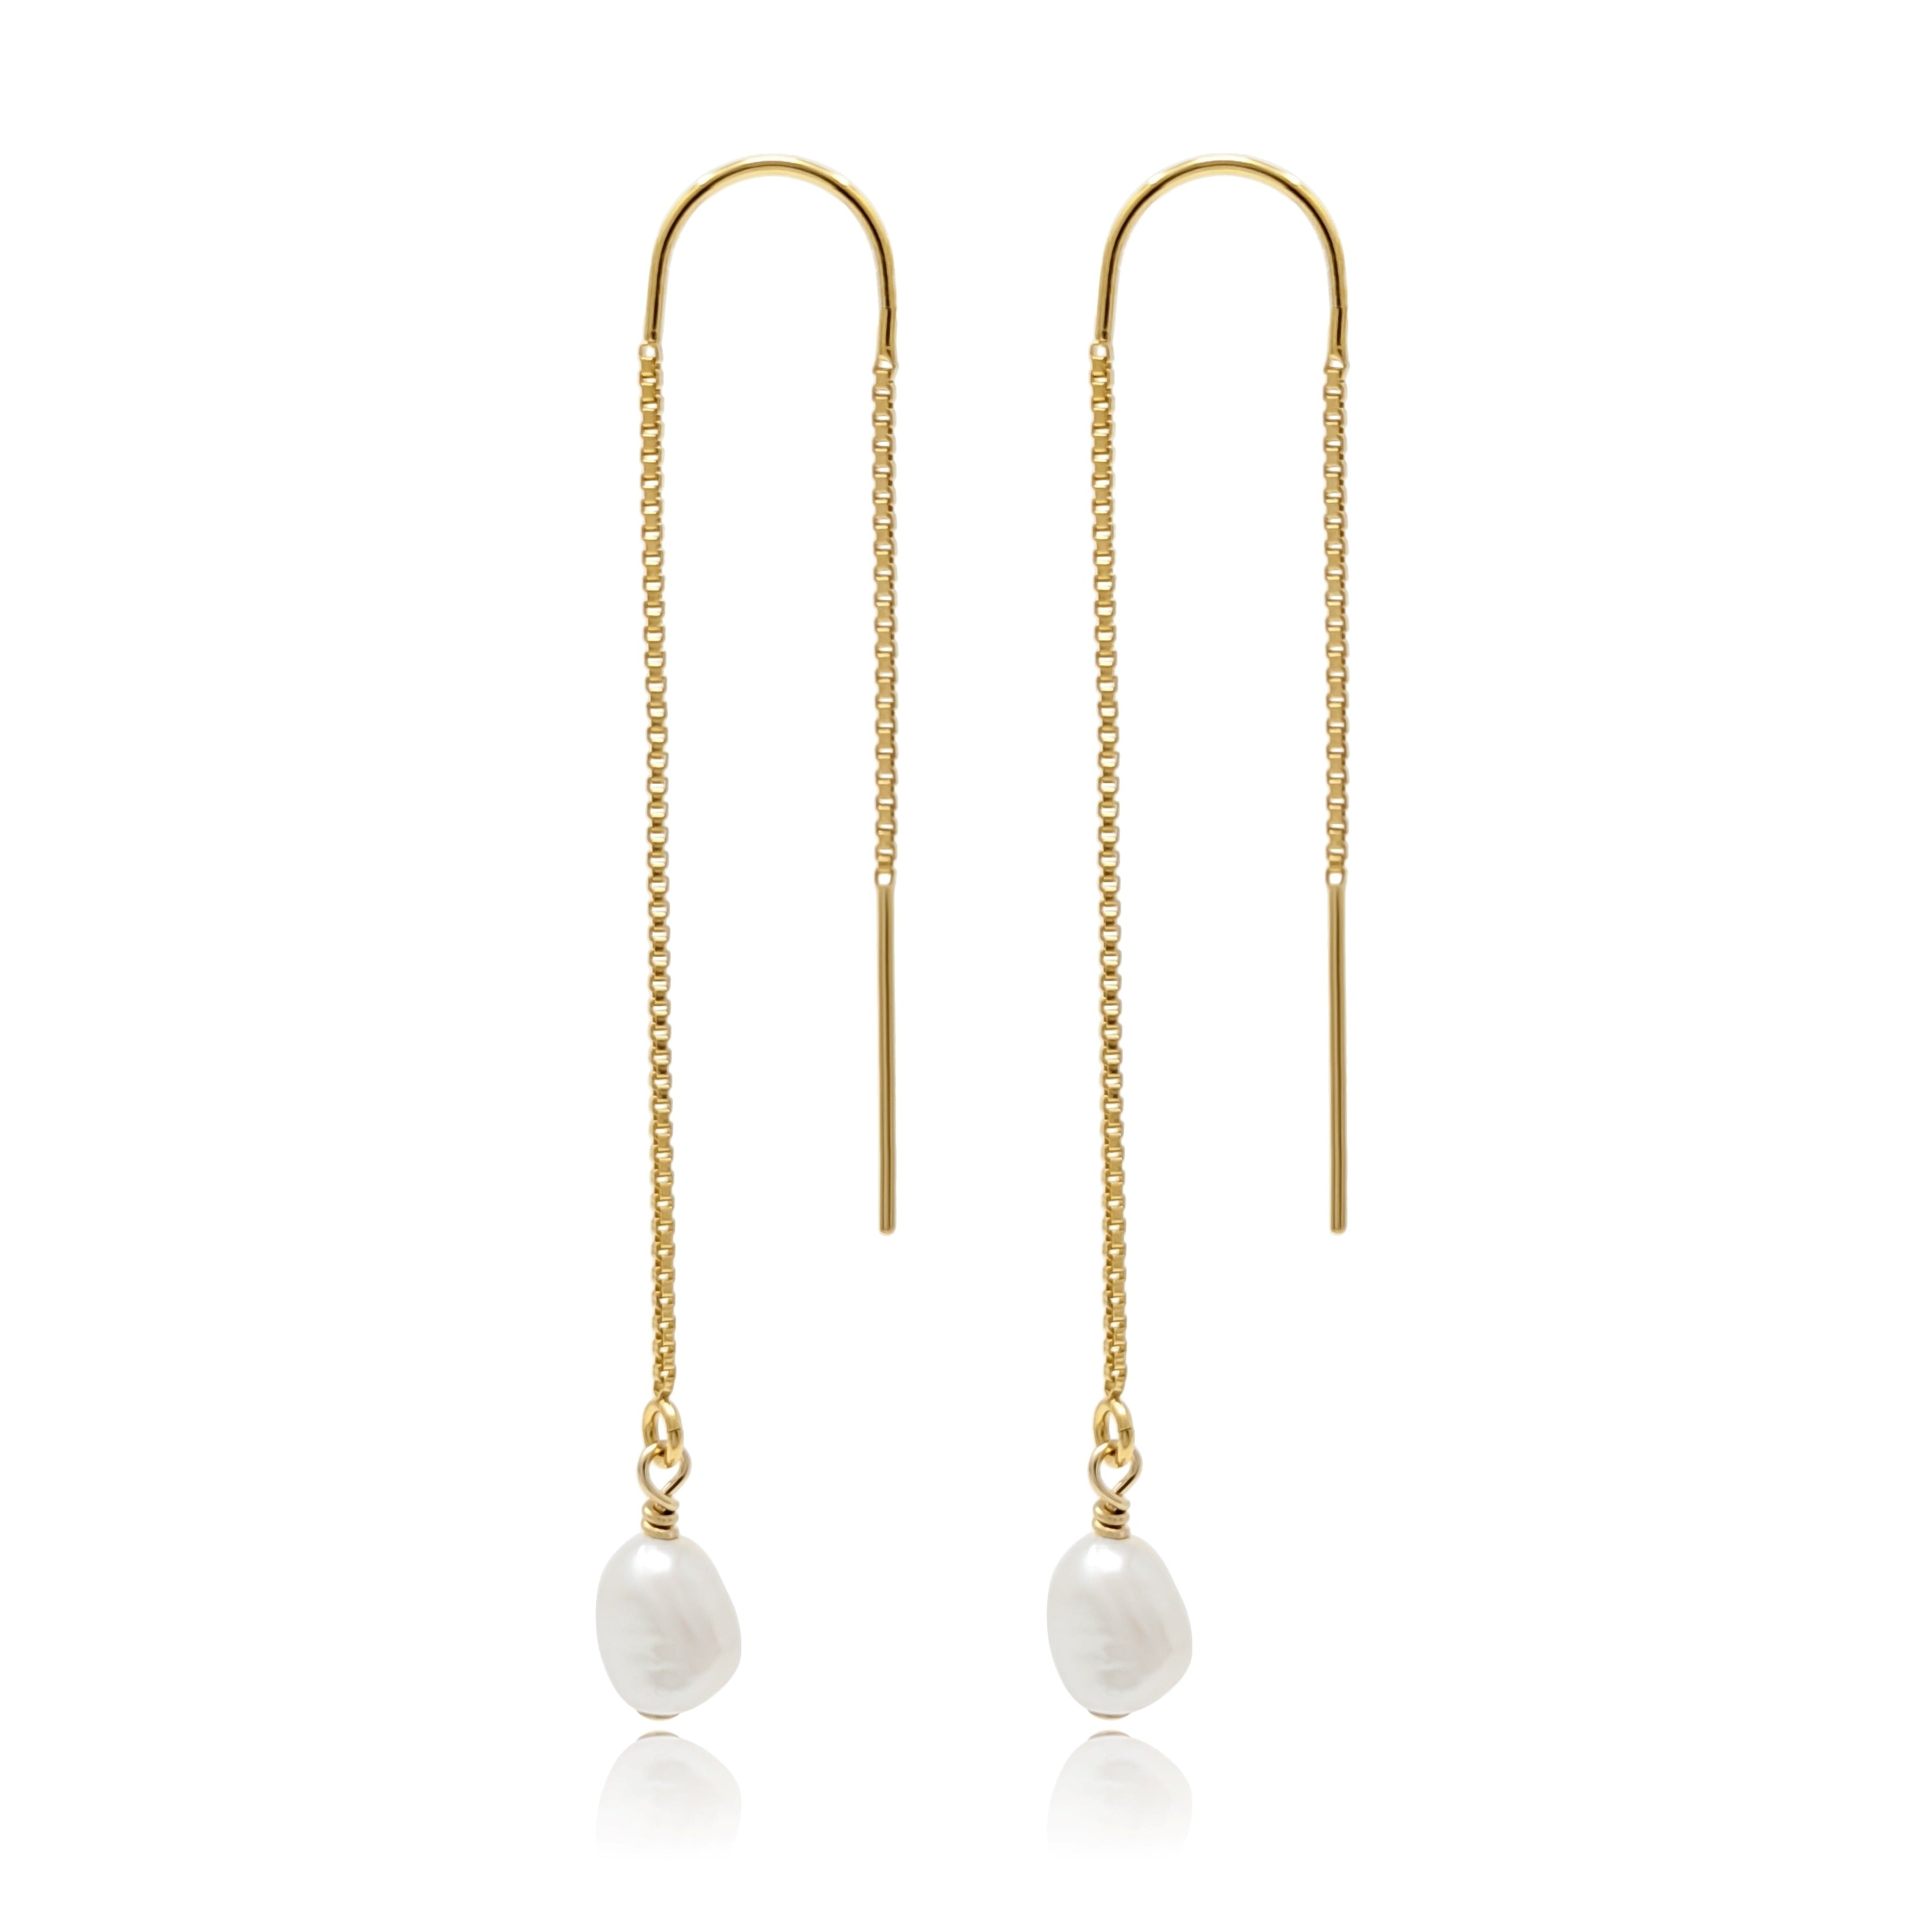 pearl drop earrings in gold filled